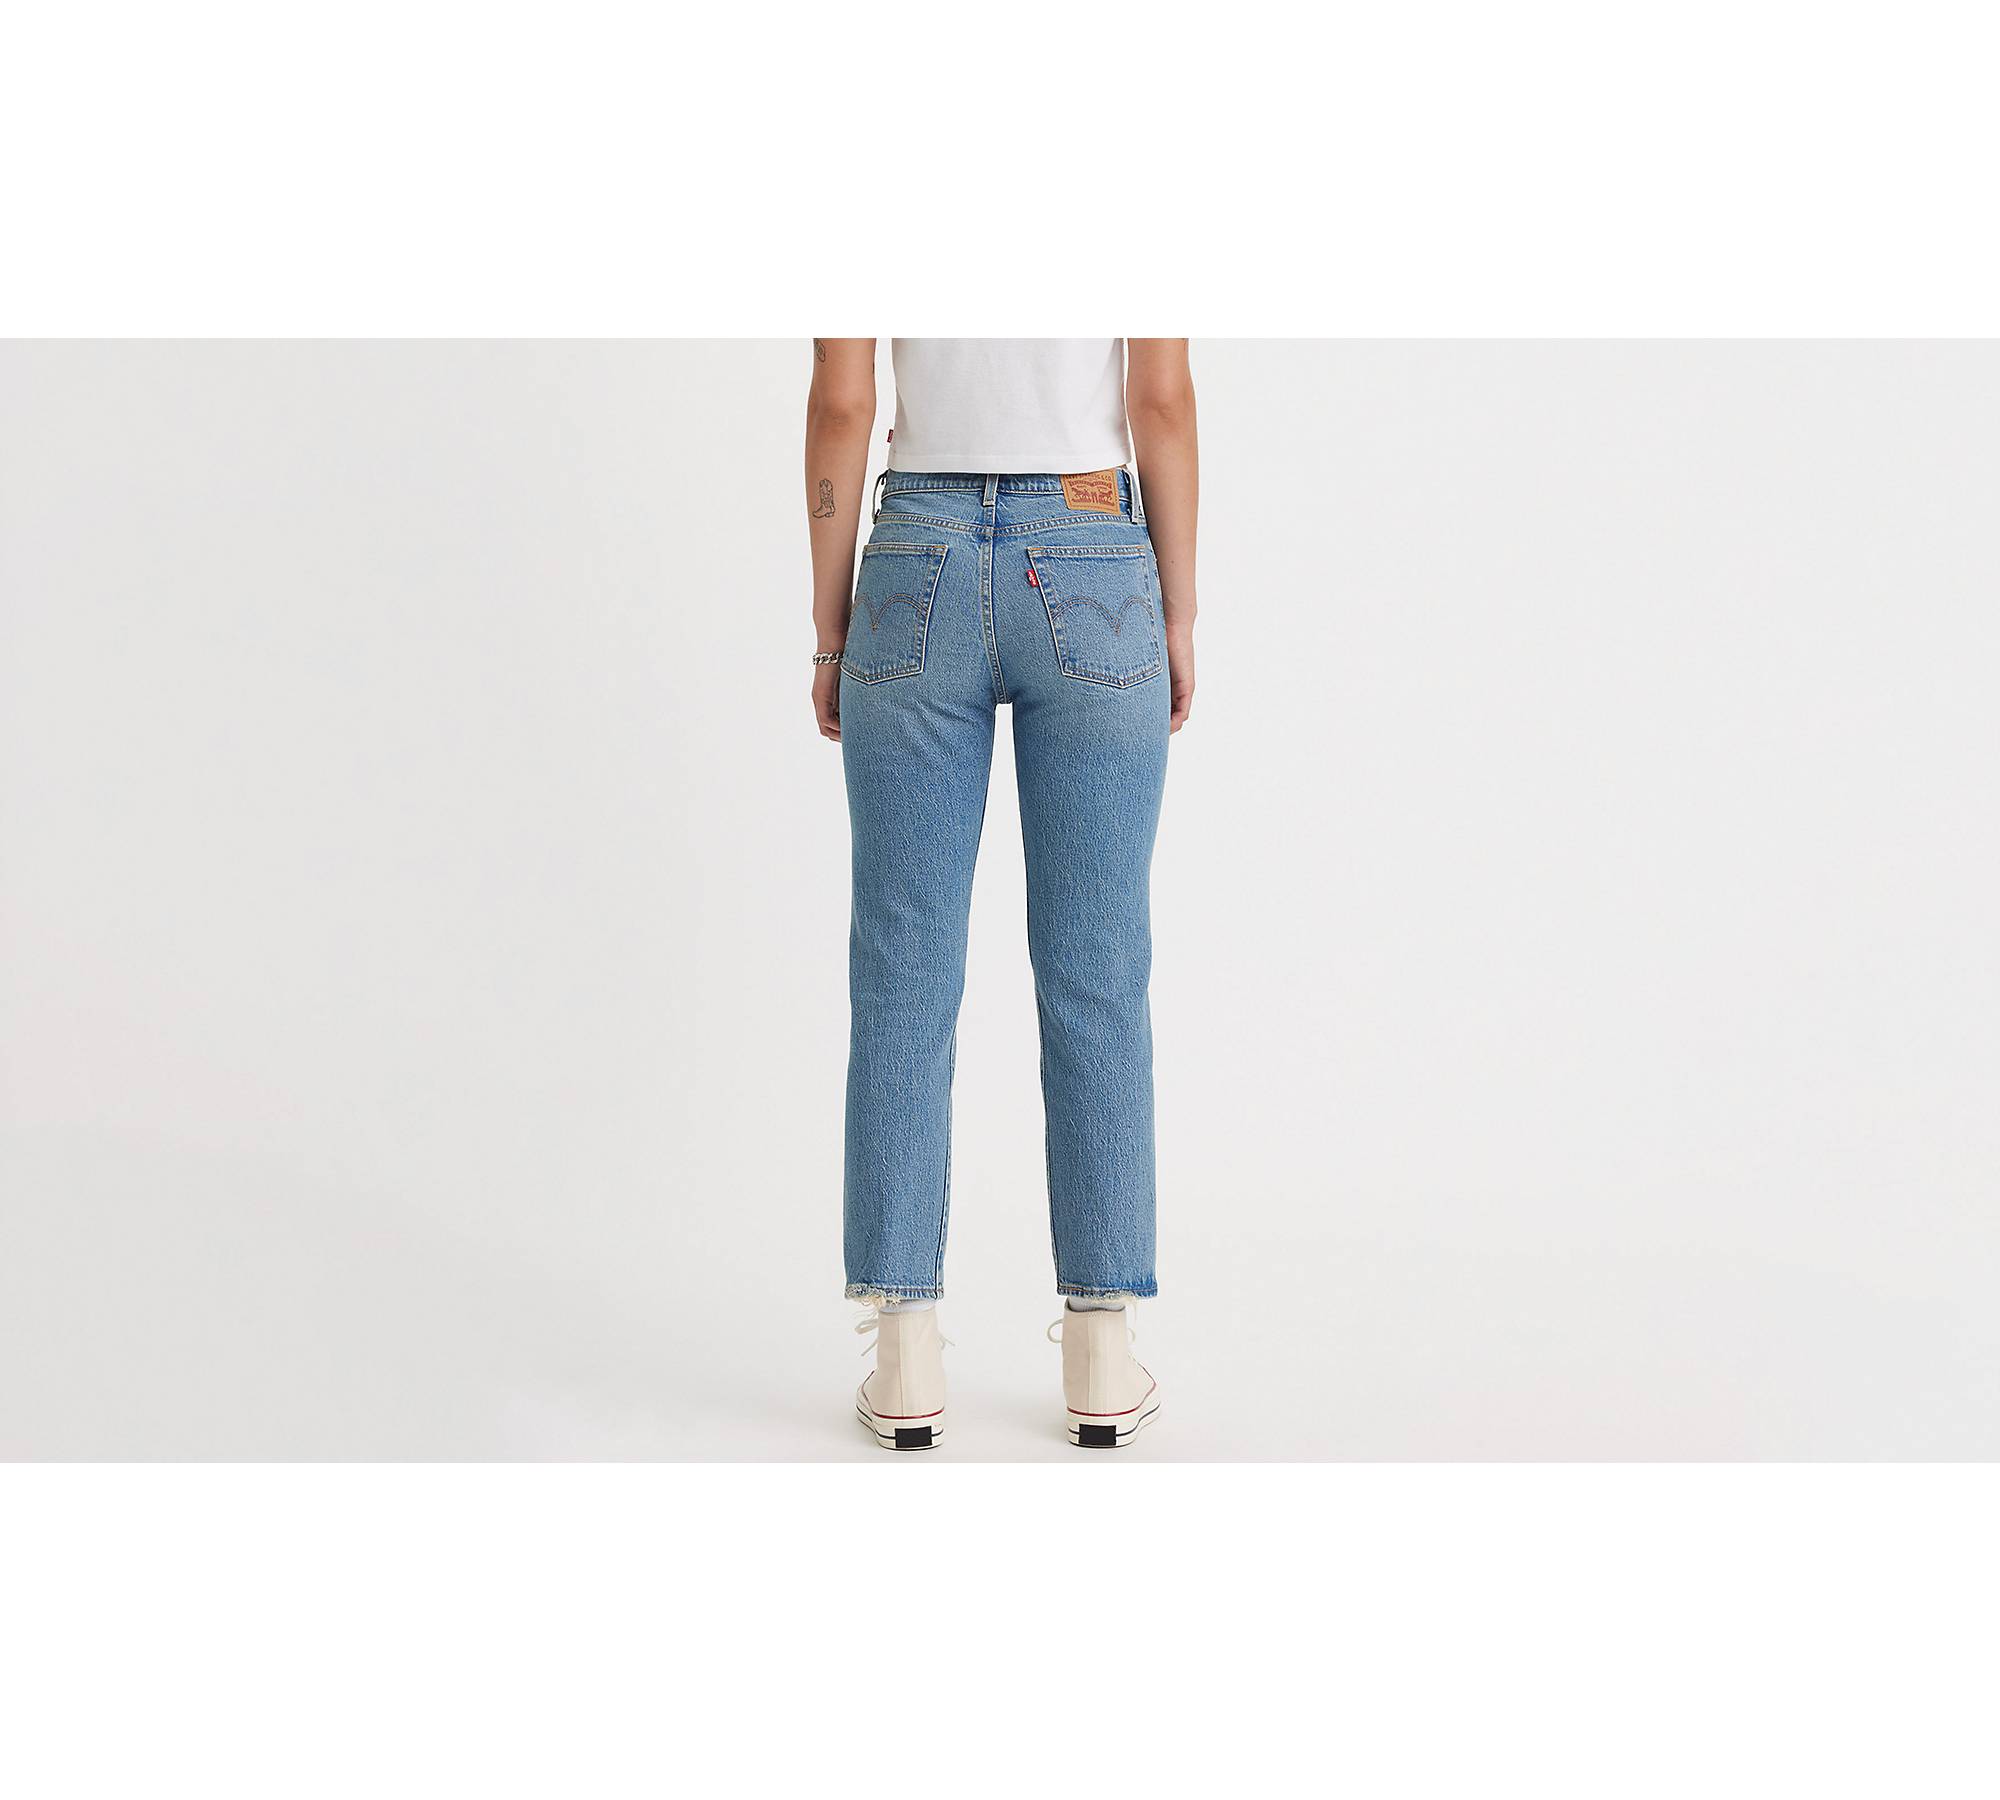 Murdoch's – Levi's - Women's Wedgie Straight Jeans